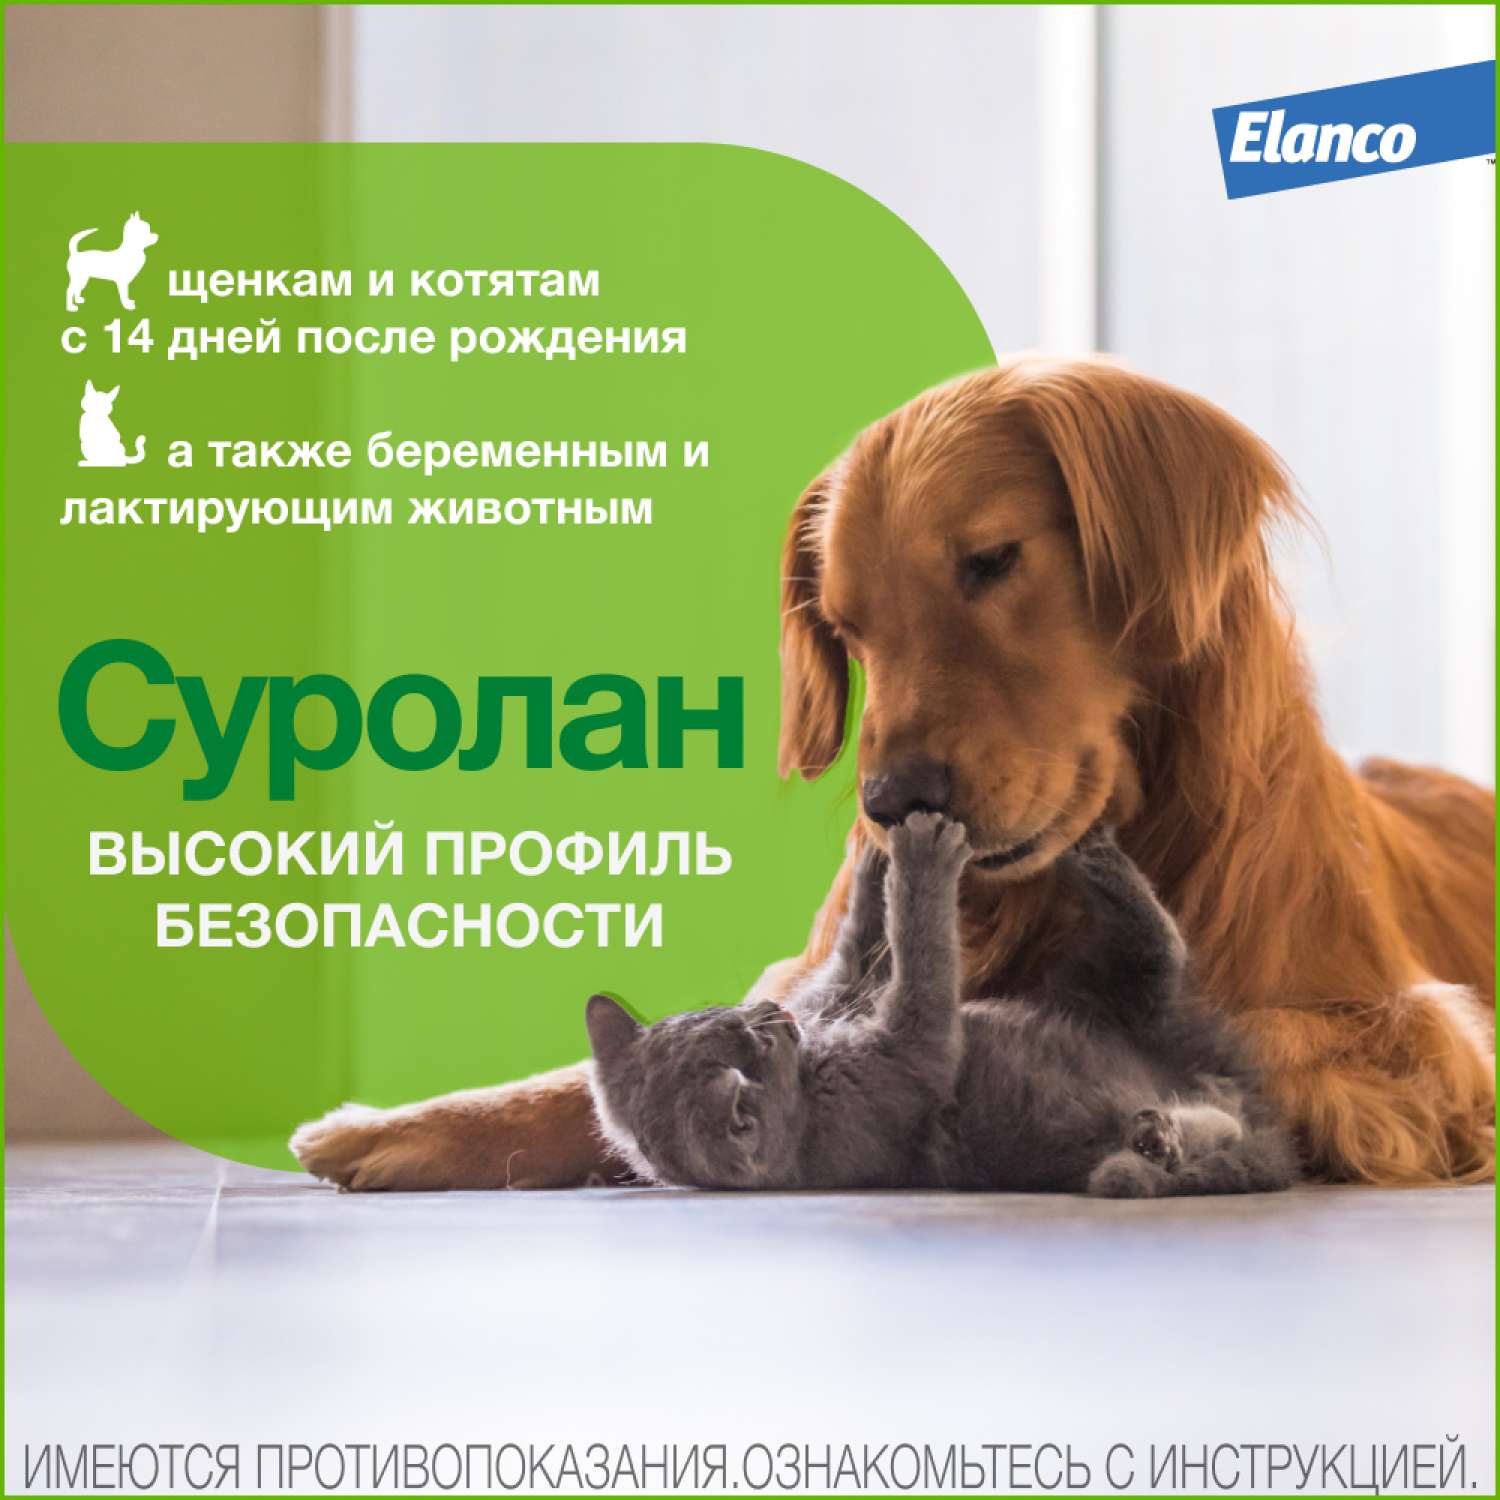 Препарат антигрибковый/антимикробный для собак и кошек Elanco Суролан 15мл - фото 4